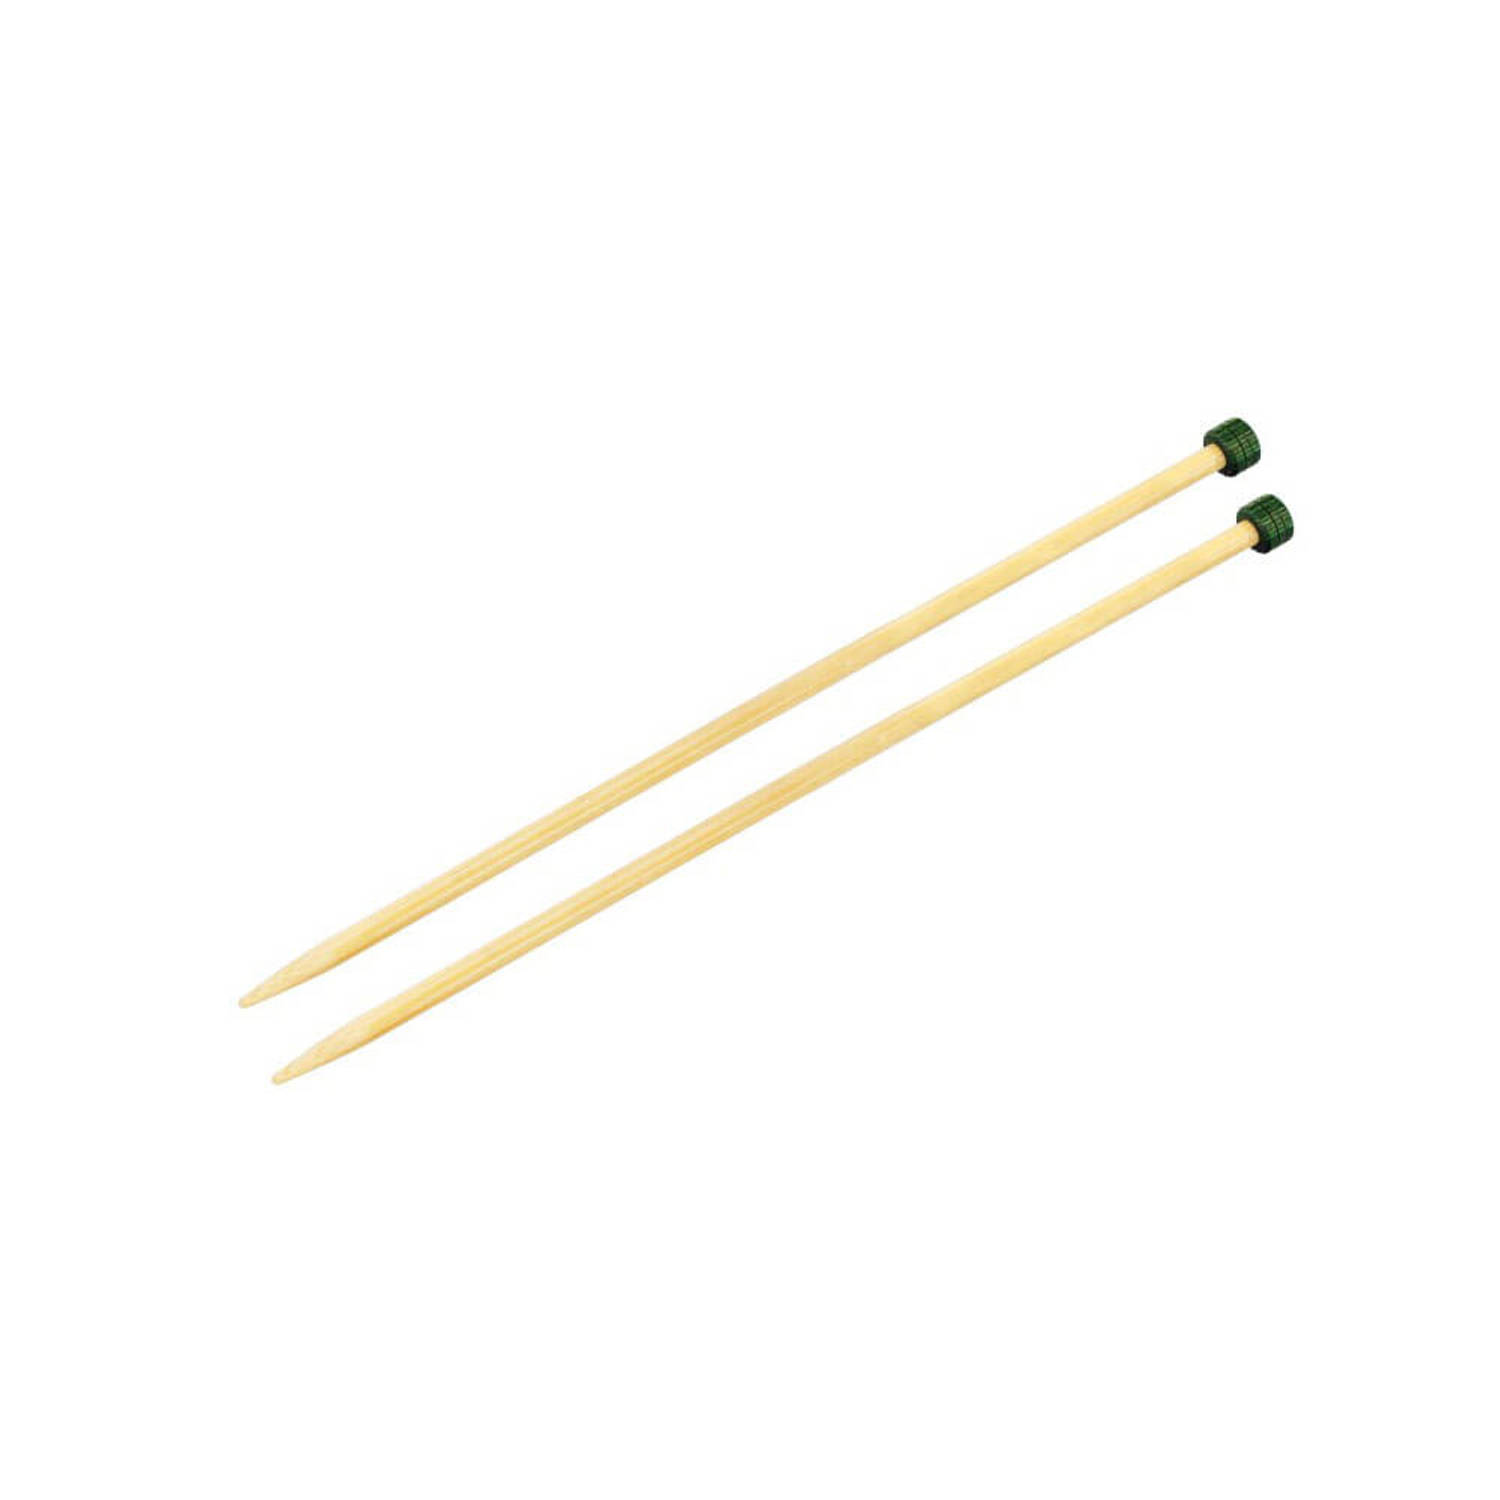 KnitPro Bamboo breinaalden 25cm 10.00mm.